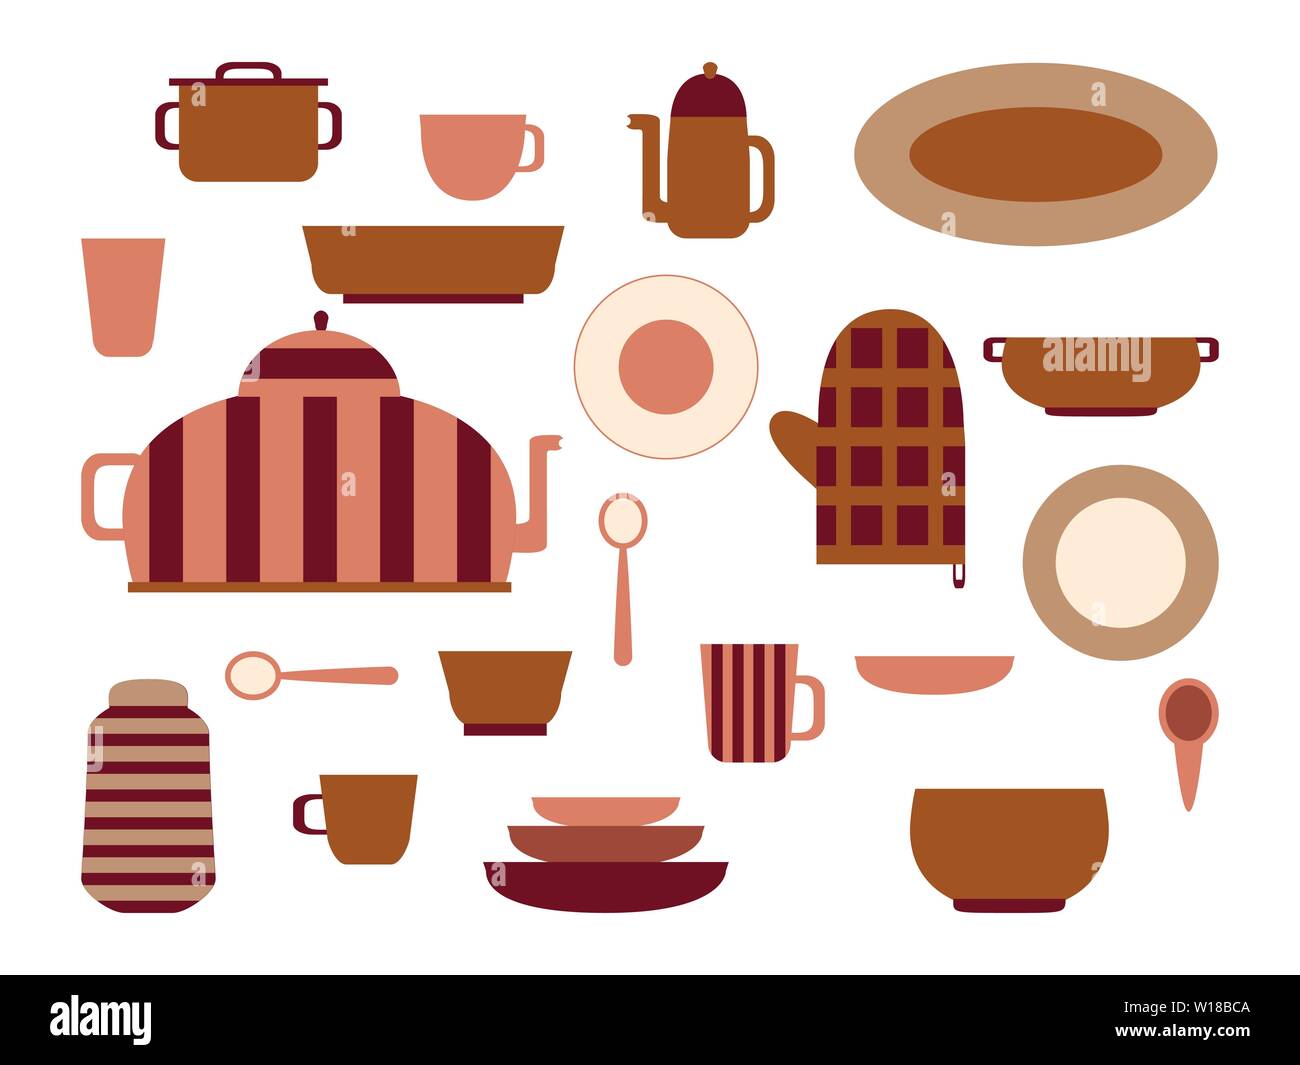 Sammlung von Küchenutensilien und Geschirr Set an Küchen Utensilien für Küche und Gerichte für Tee oder Kaffee trinken Flachbild Vector Illustration Stock Vektor